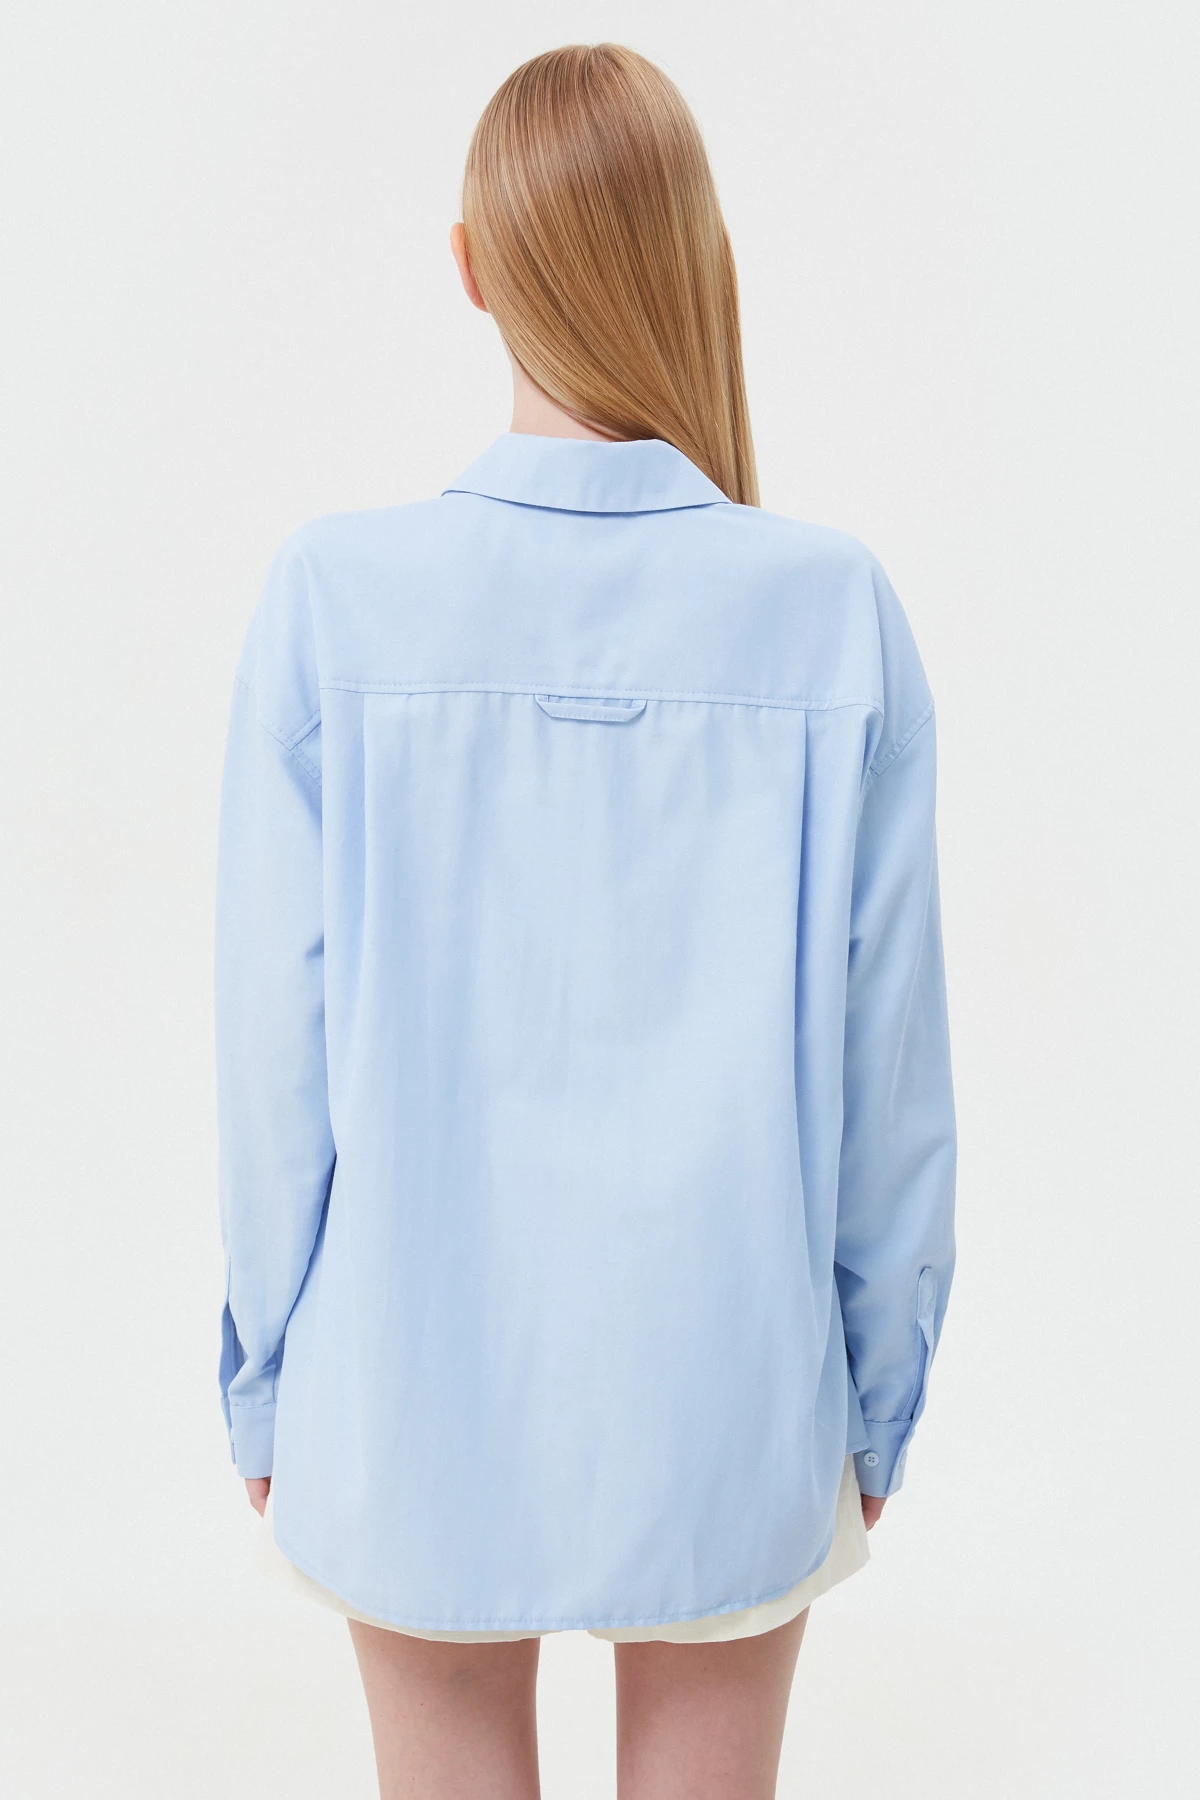 Loose-fit blue cotton shirt, photo 5